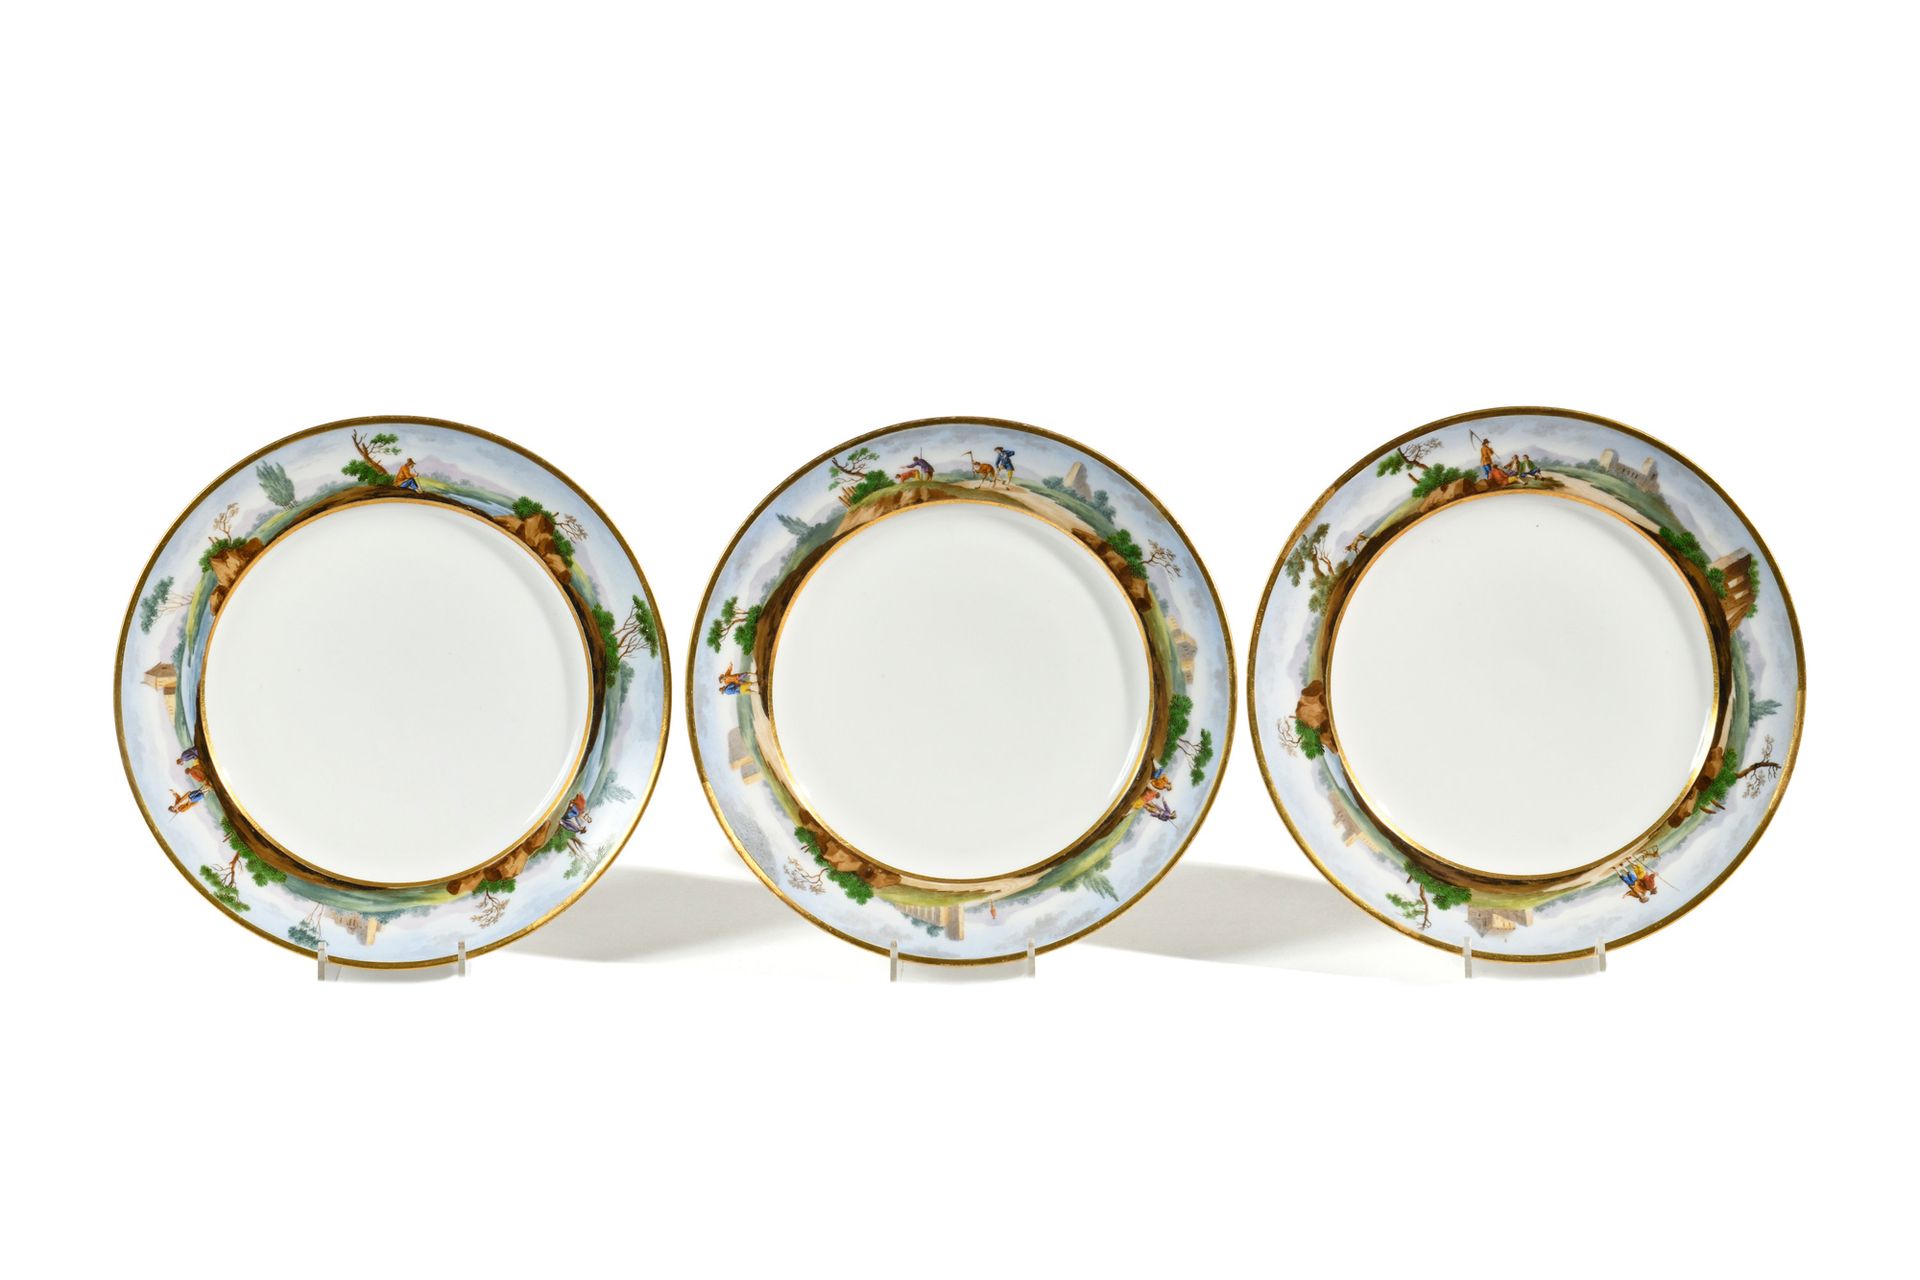 Null 巴黎（德纳斯特制造厂）
三个瓷盘，Marli带有意大利风景中人物的多色装饰。
19世纪。
直径：24厘米
(修复和轻微磨损)。

6874